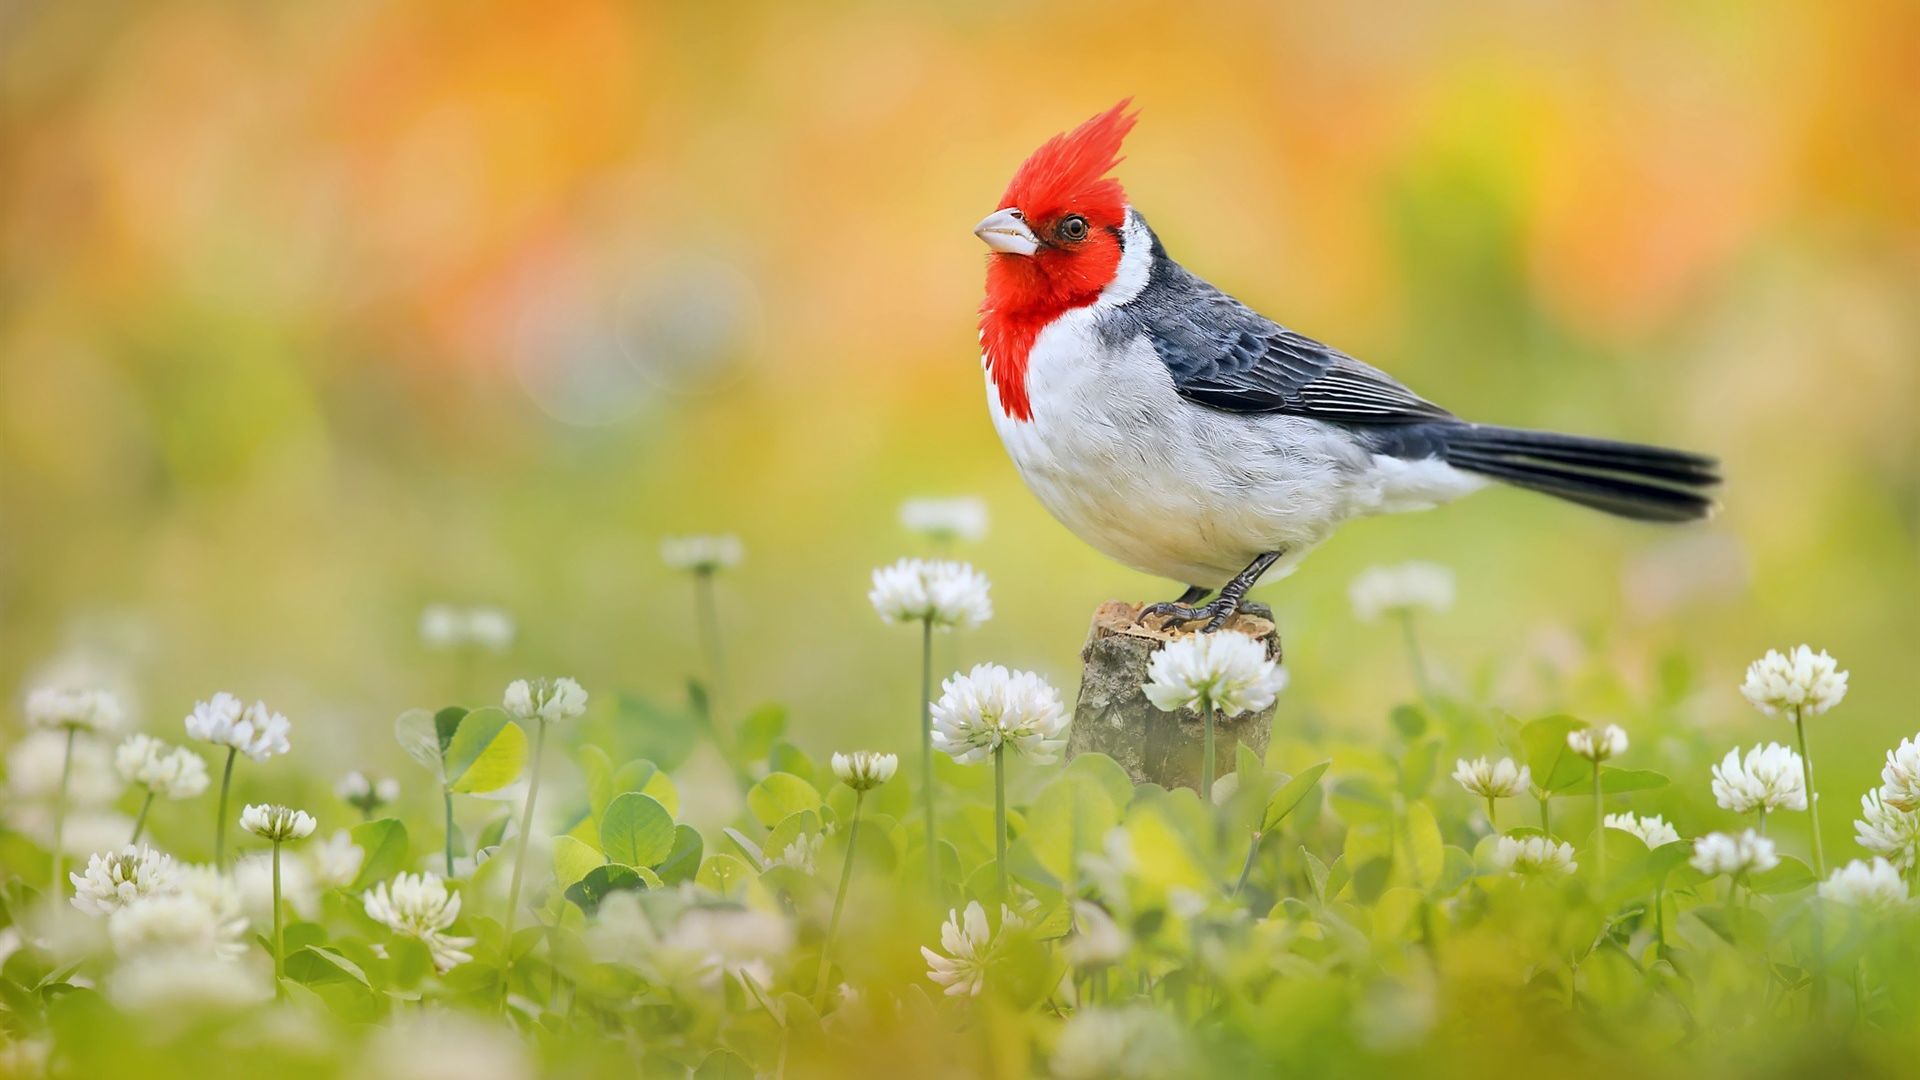 Wallpaper Red-crested cardinal, Cardinal, bird, @ meadow